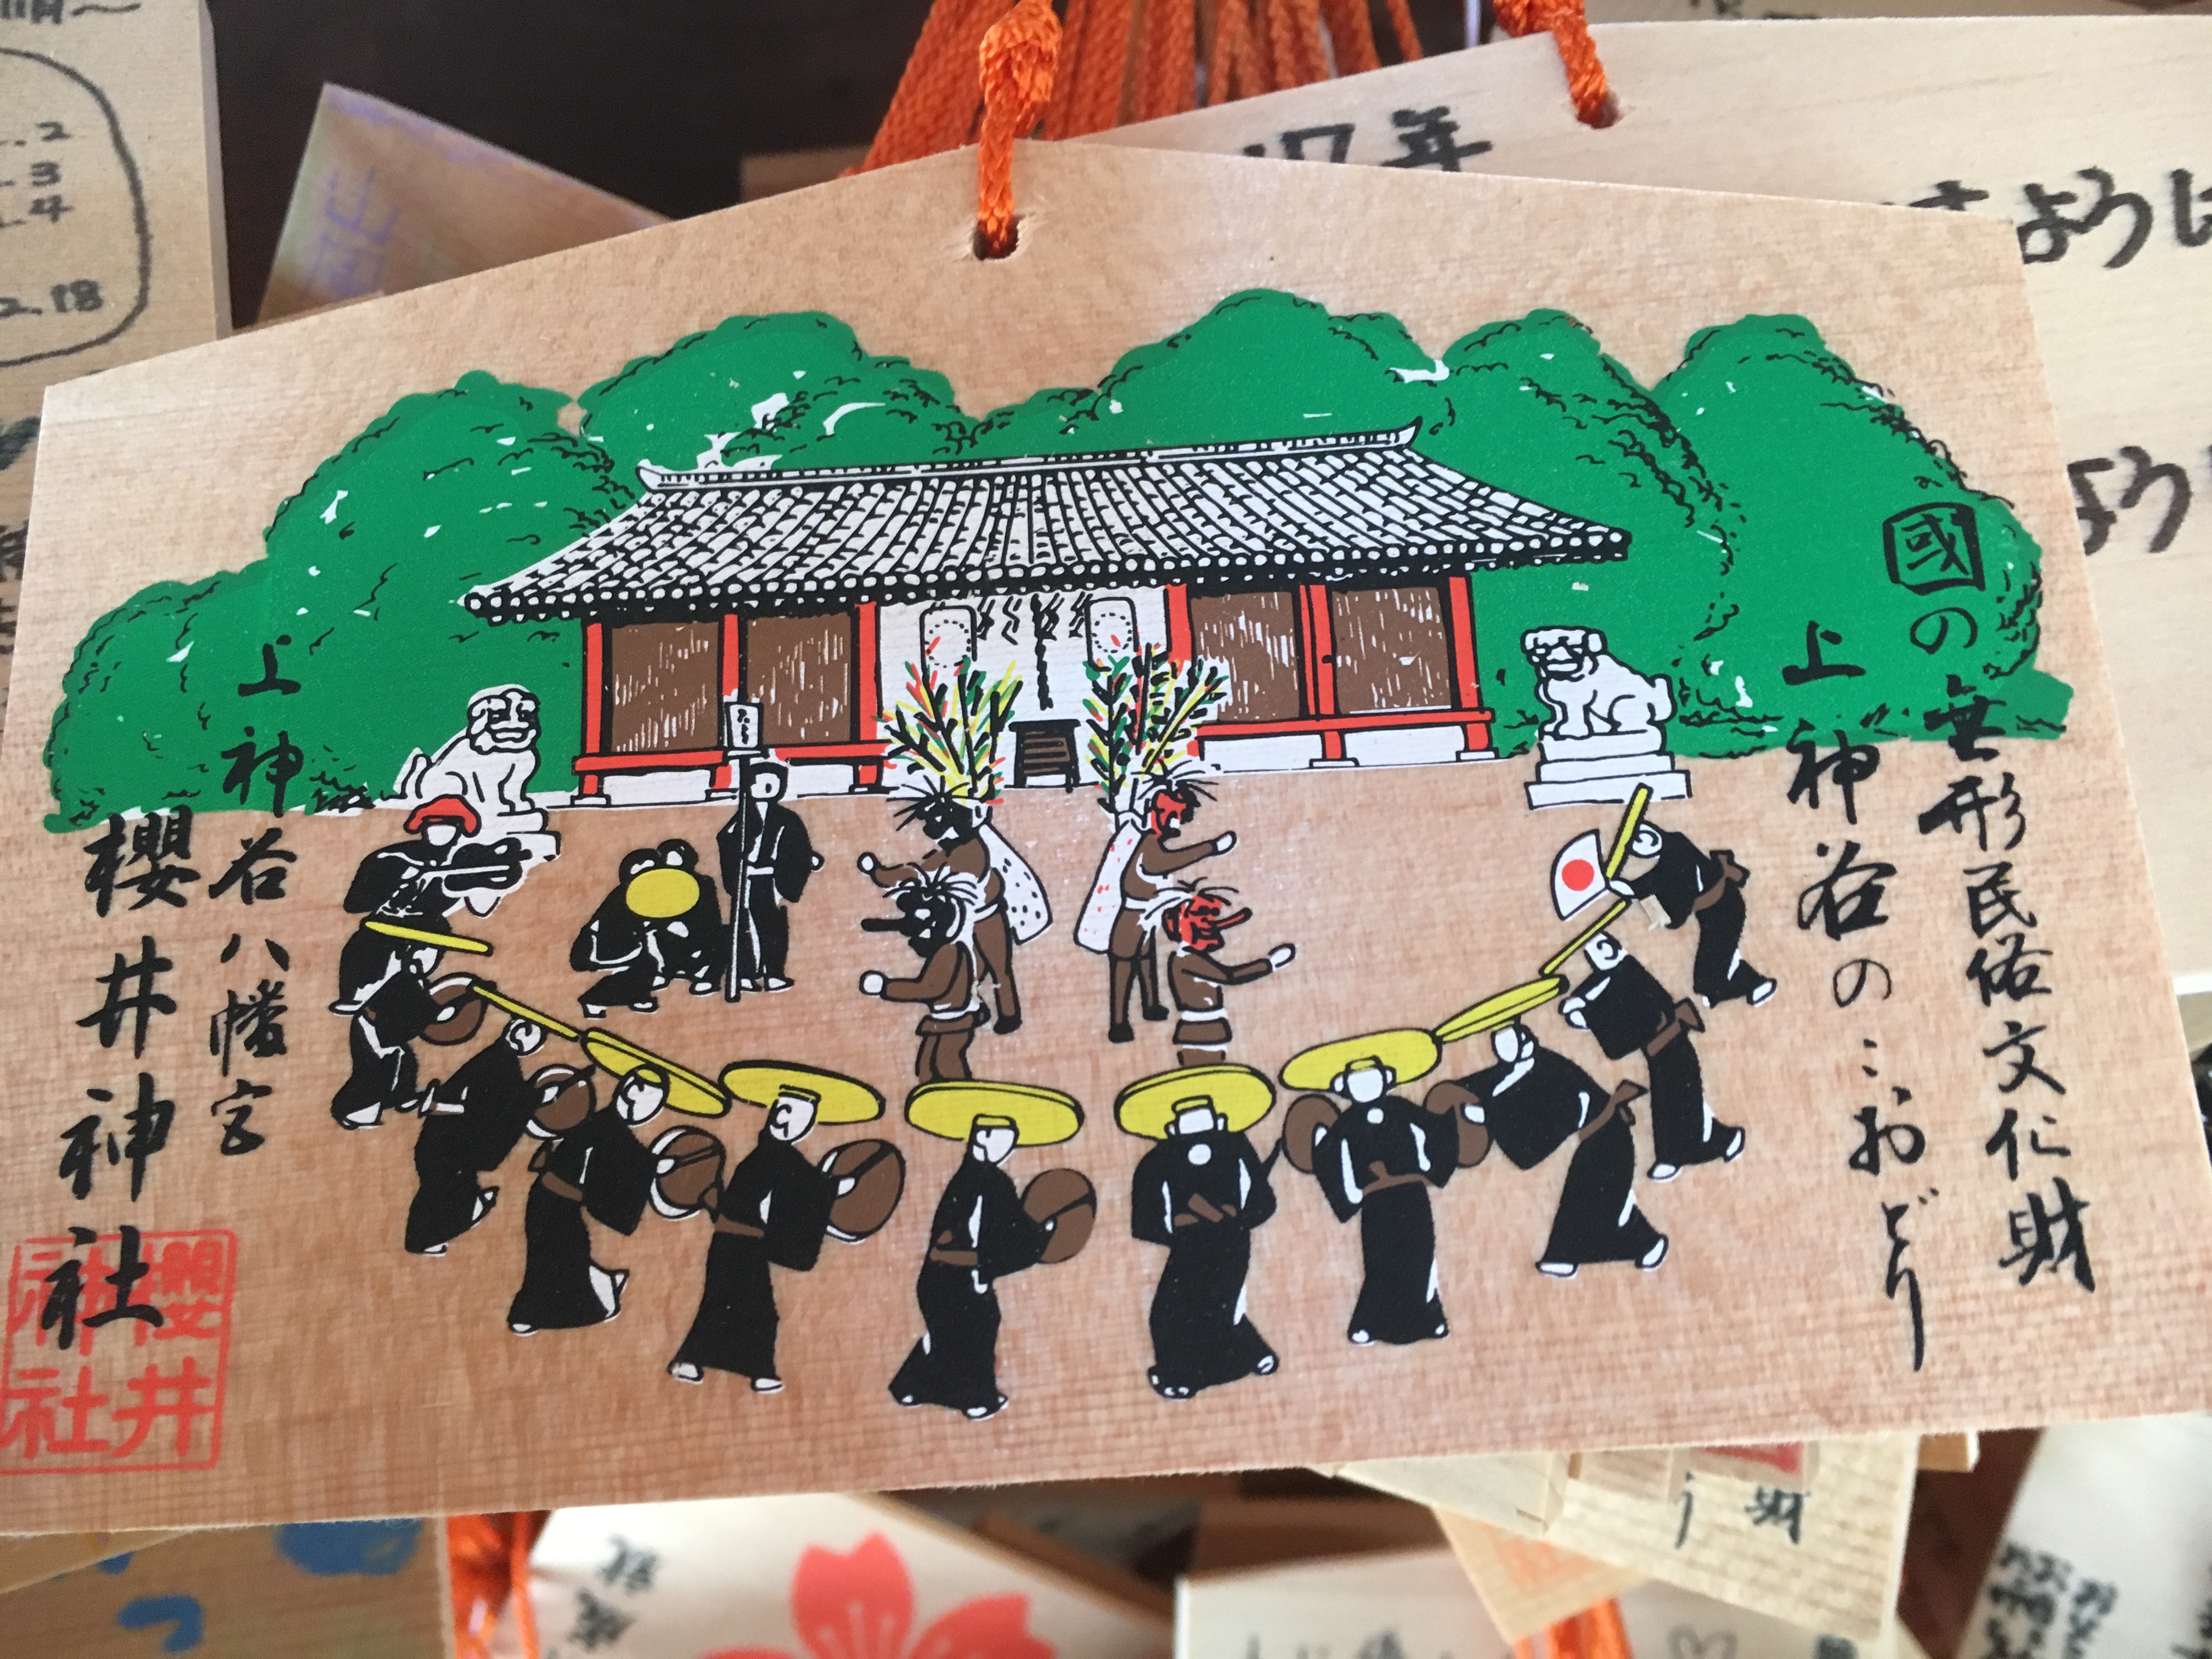  Ema featuring Sakurai Shrine's Niwadani no Koodori